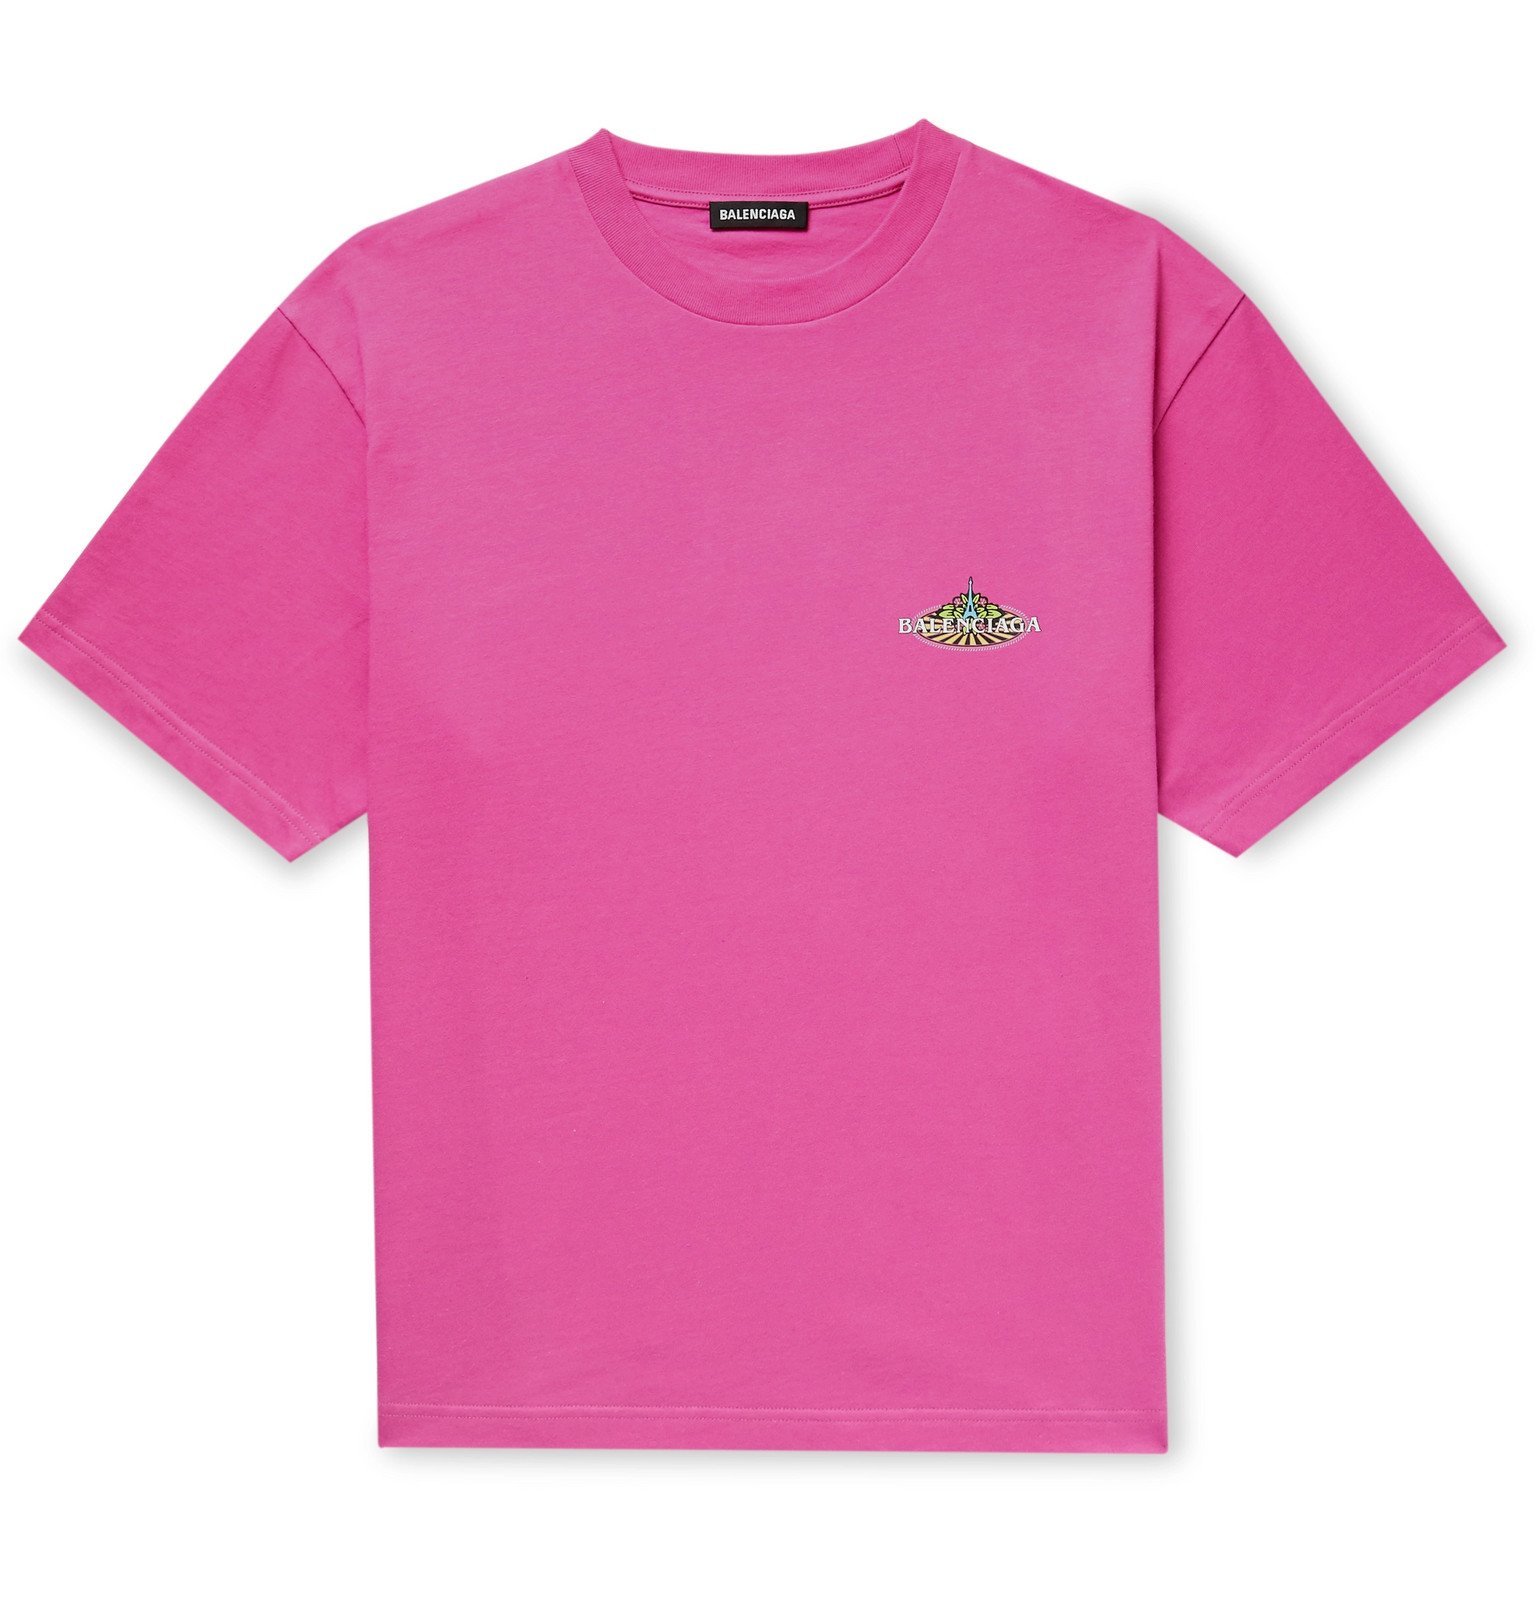 balenciaga shirt pink